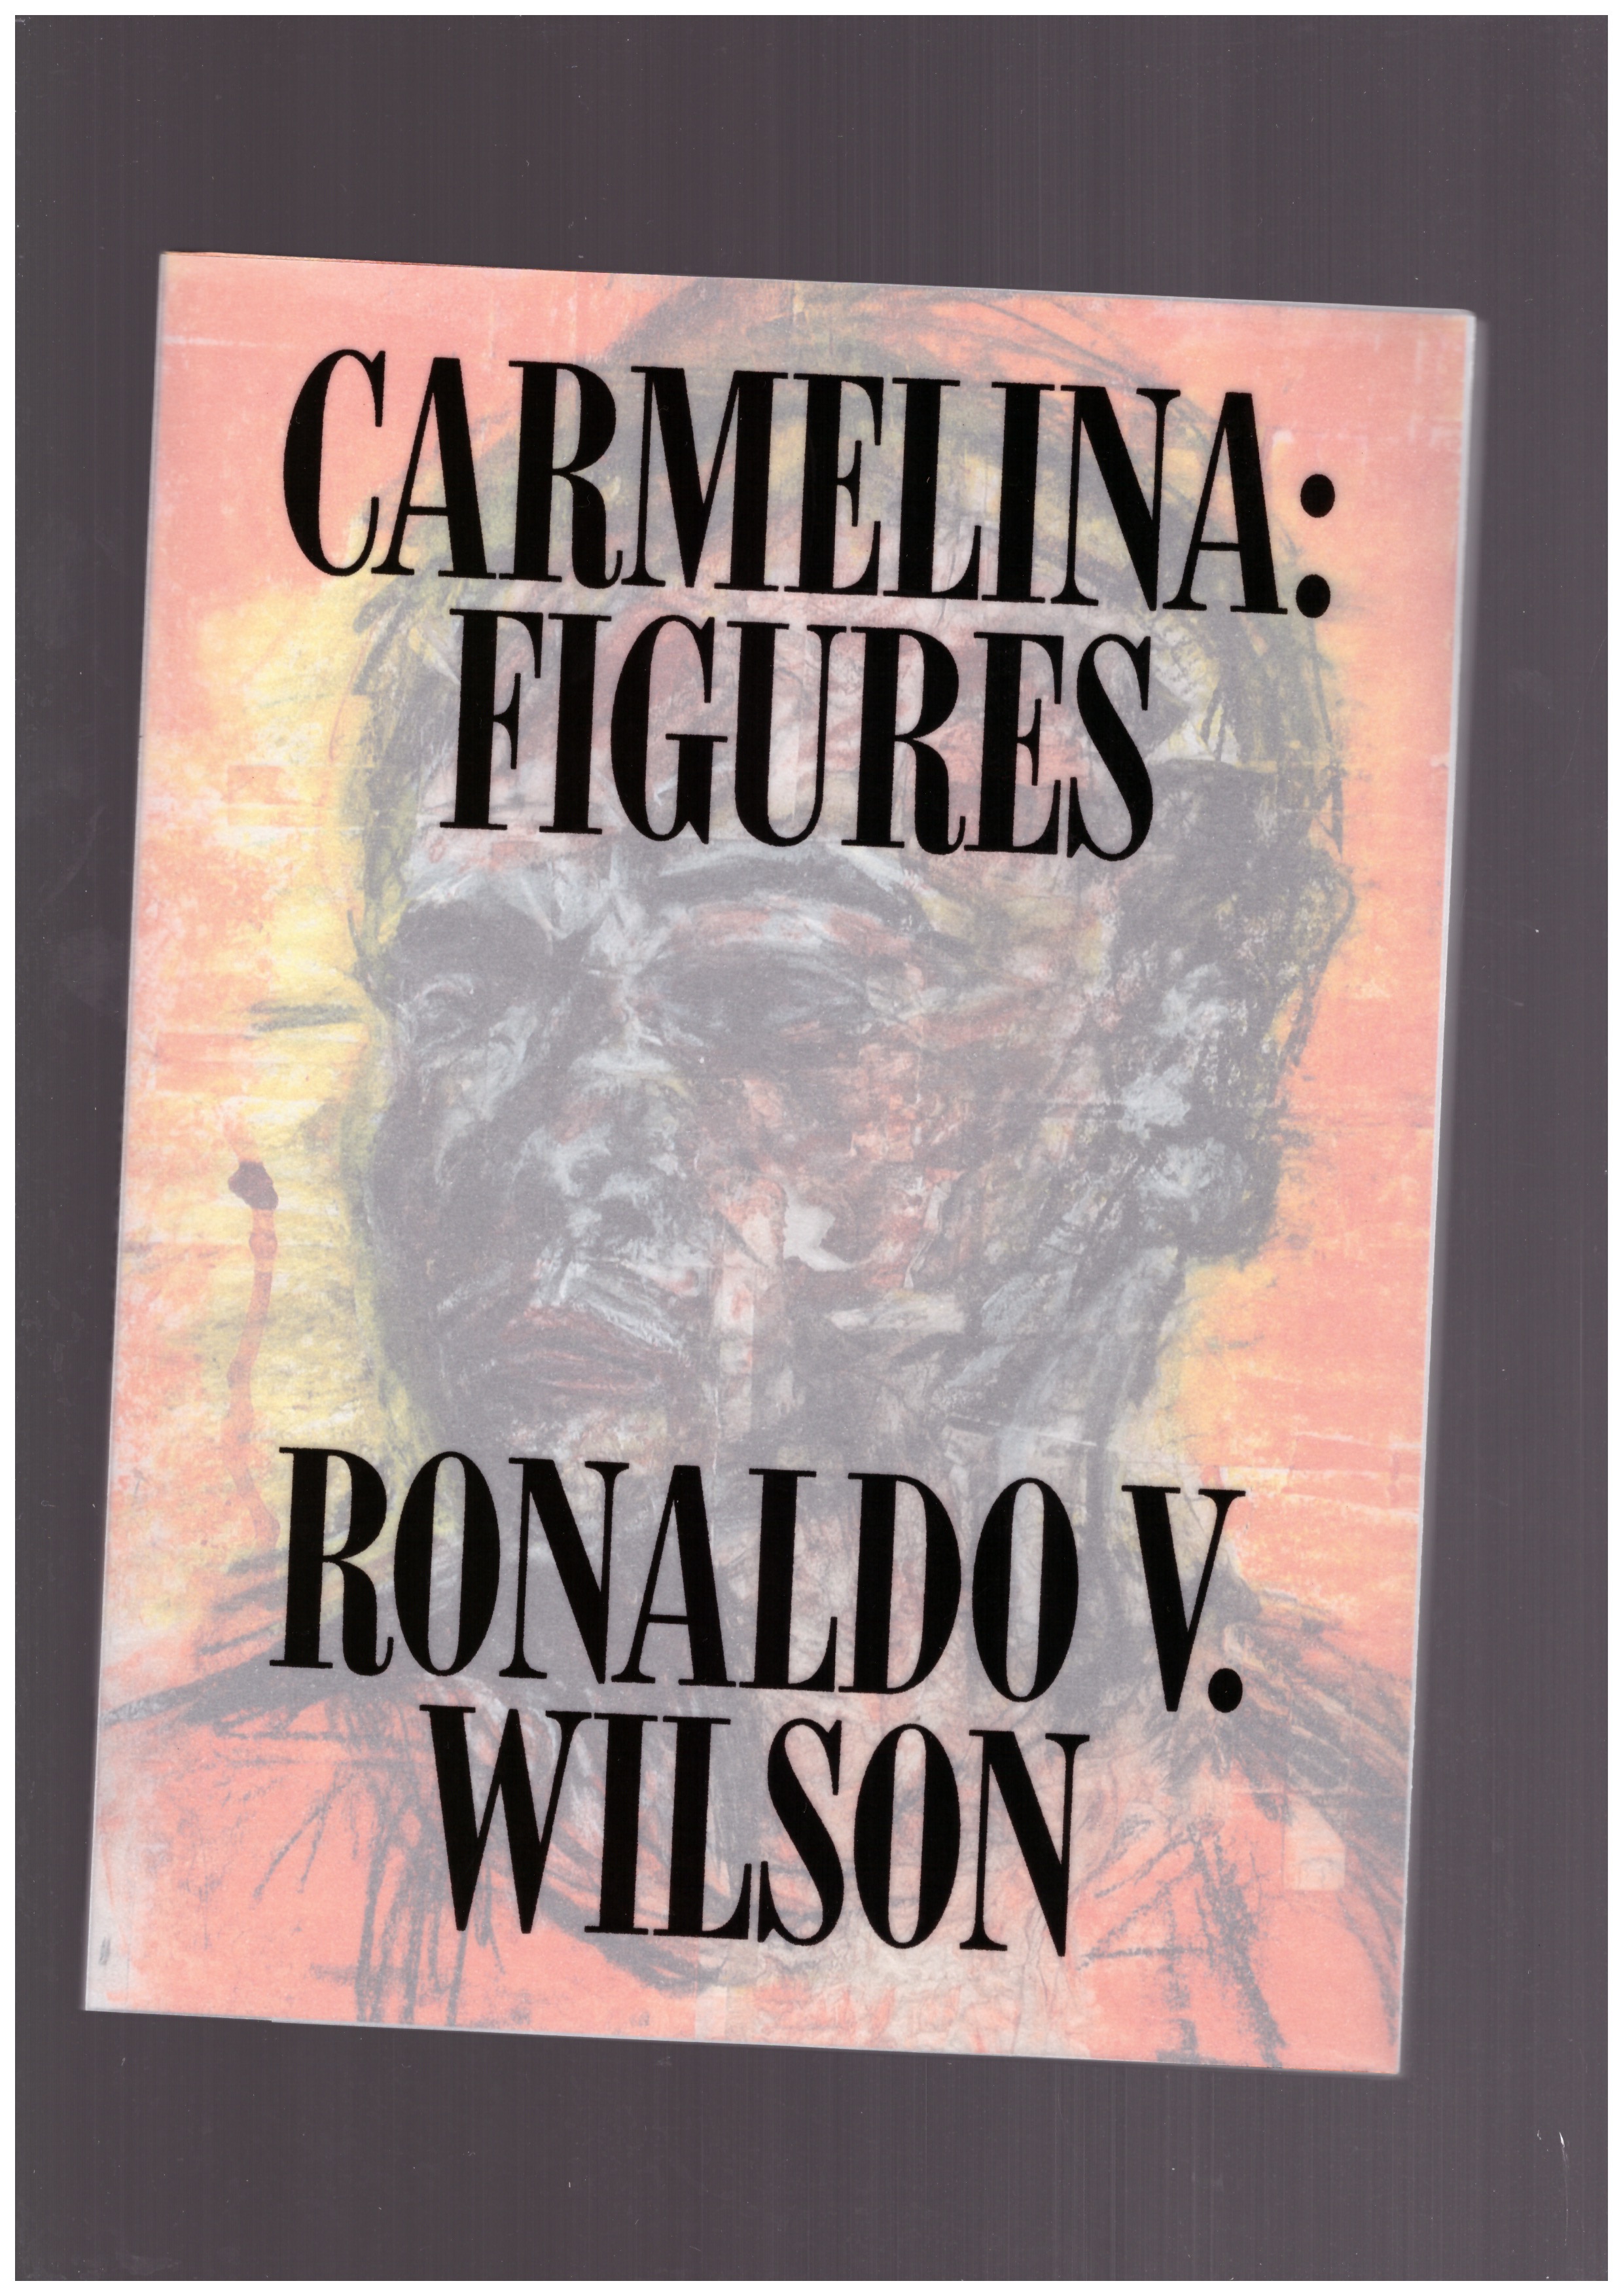 WILSON, Ronaldo V. - Carmelina : Figures